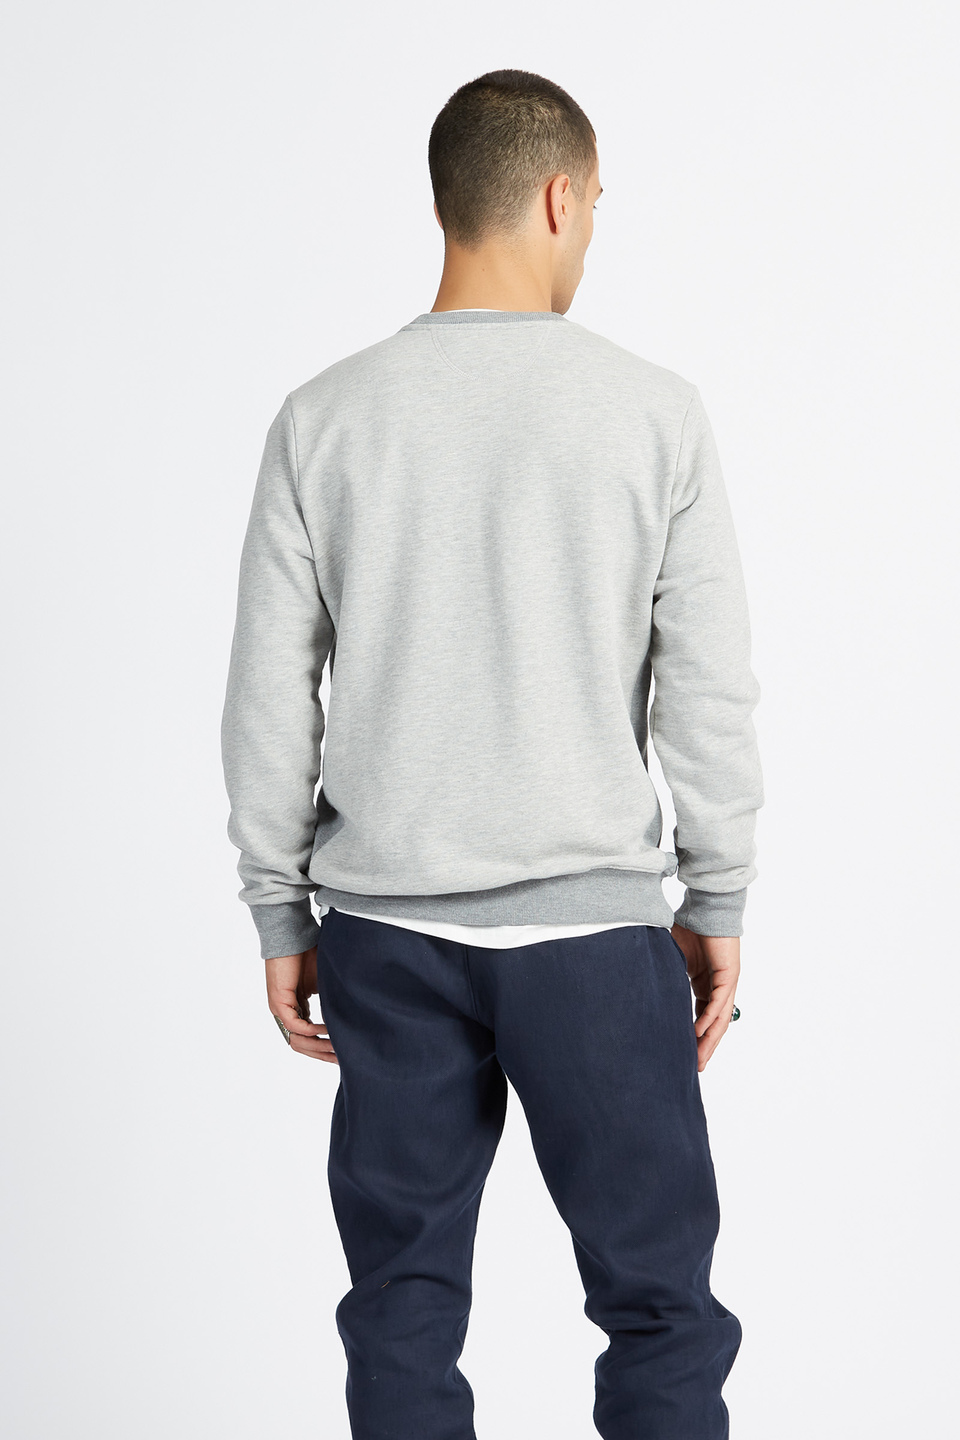 Polo Academy men's full zip crewneck sweatshirt mixed fabric big logo - Vander | La Martina - Official Online Shop